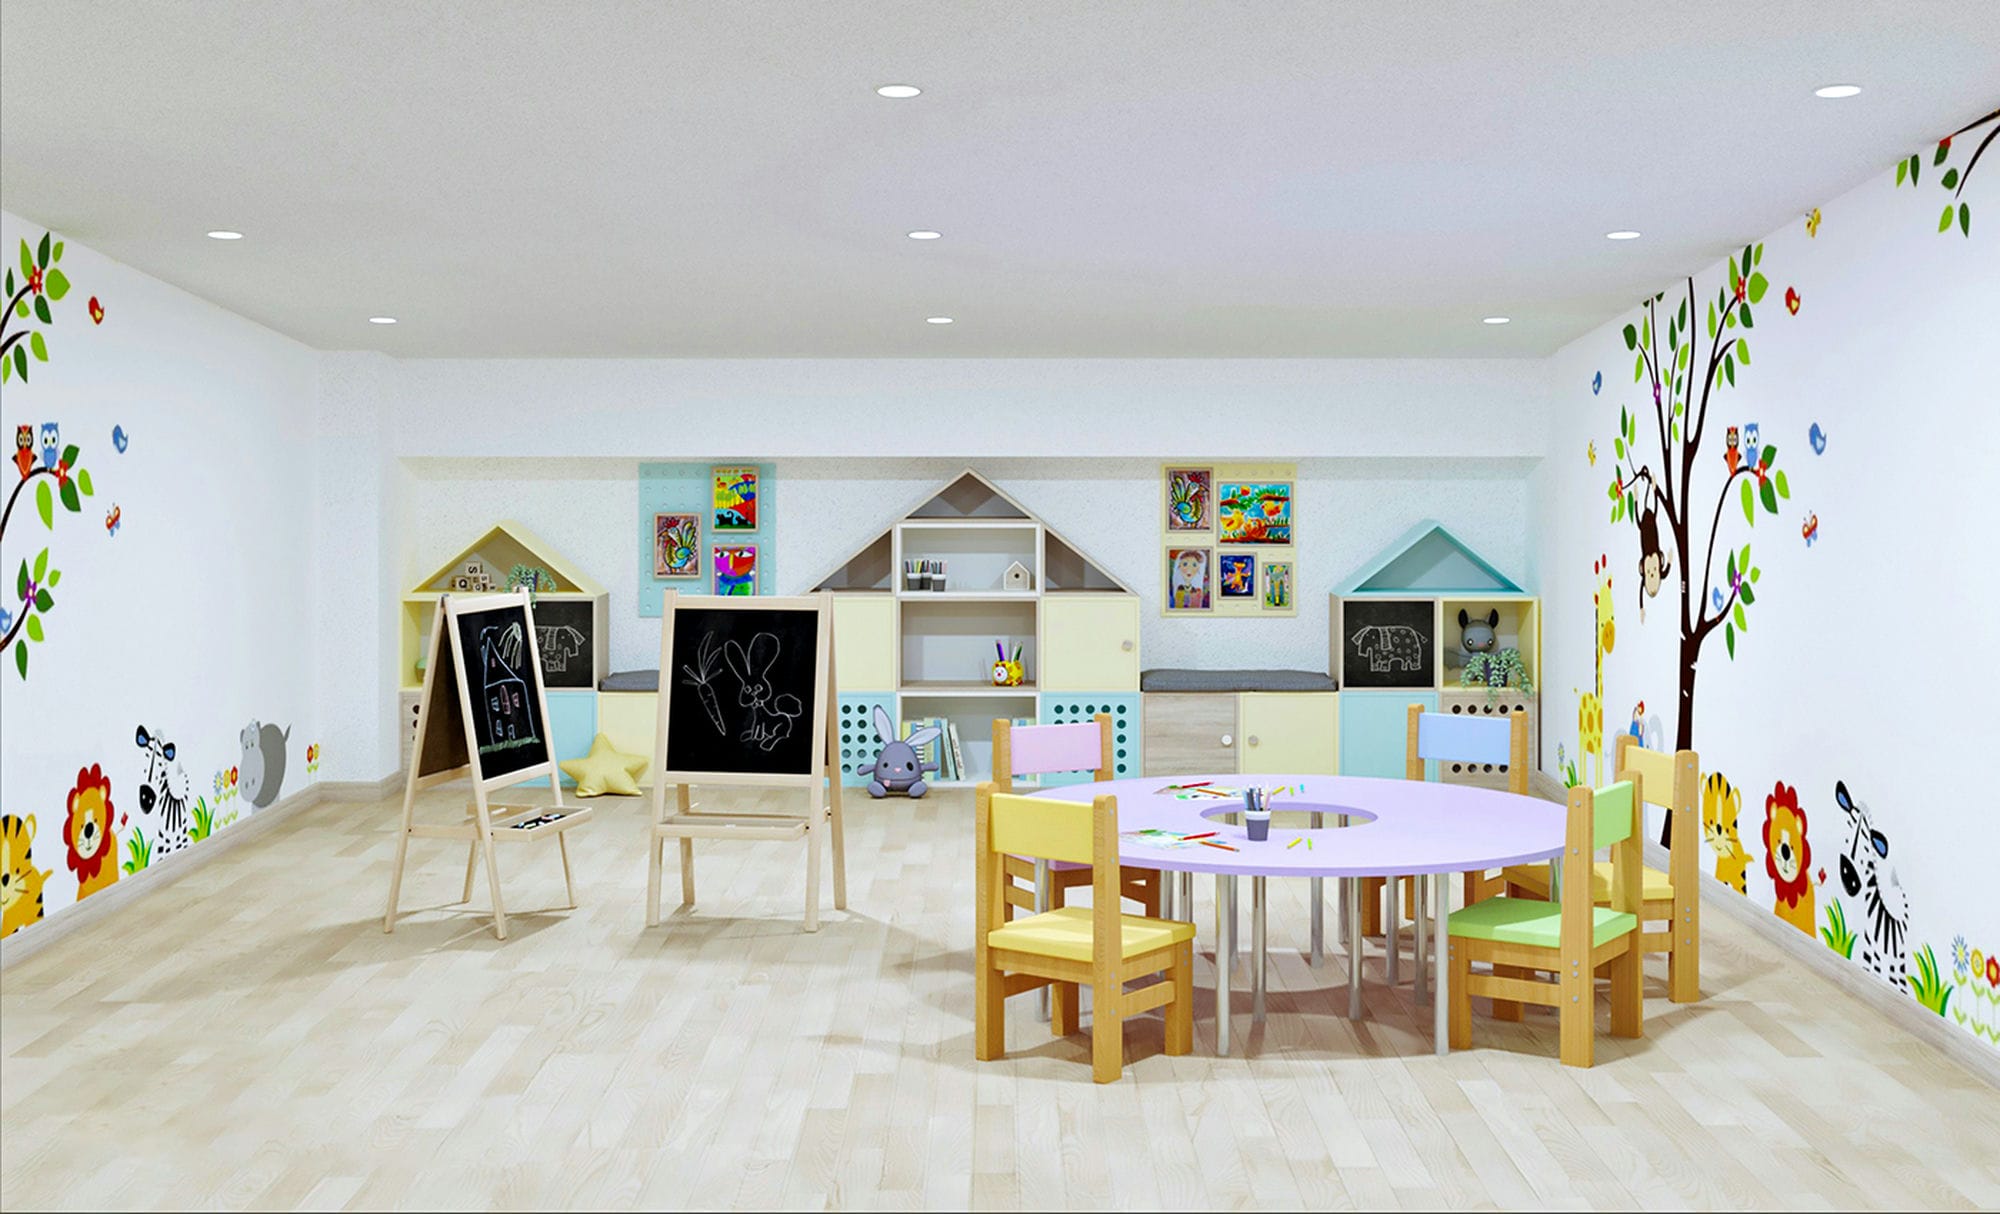 Class room 3D Design of Happy House Preschool